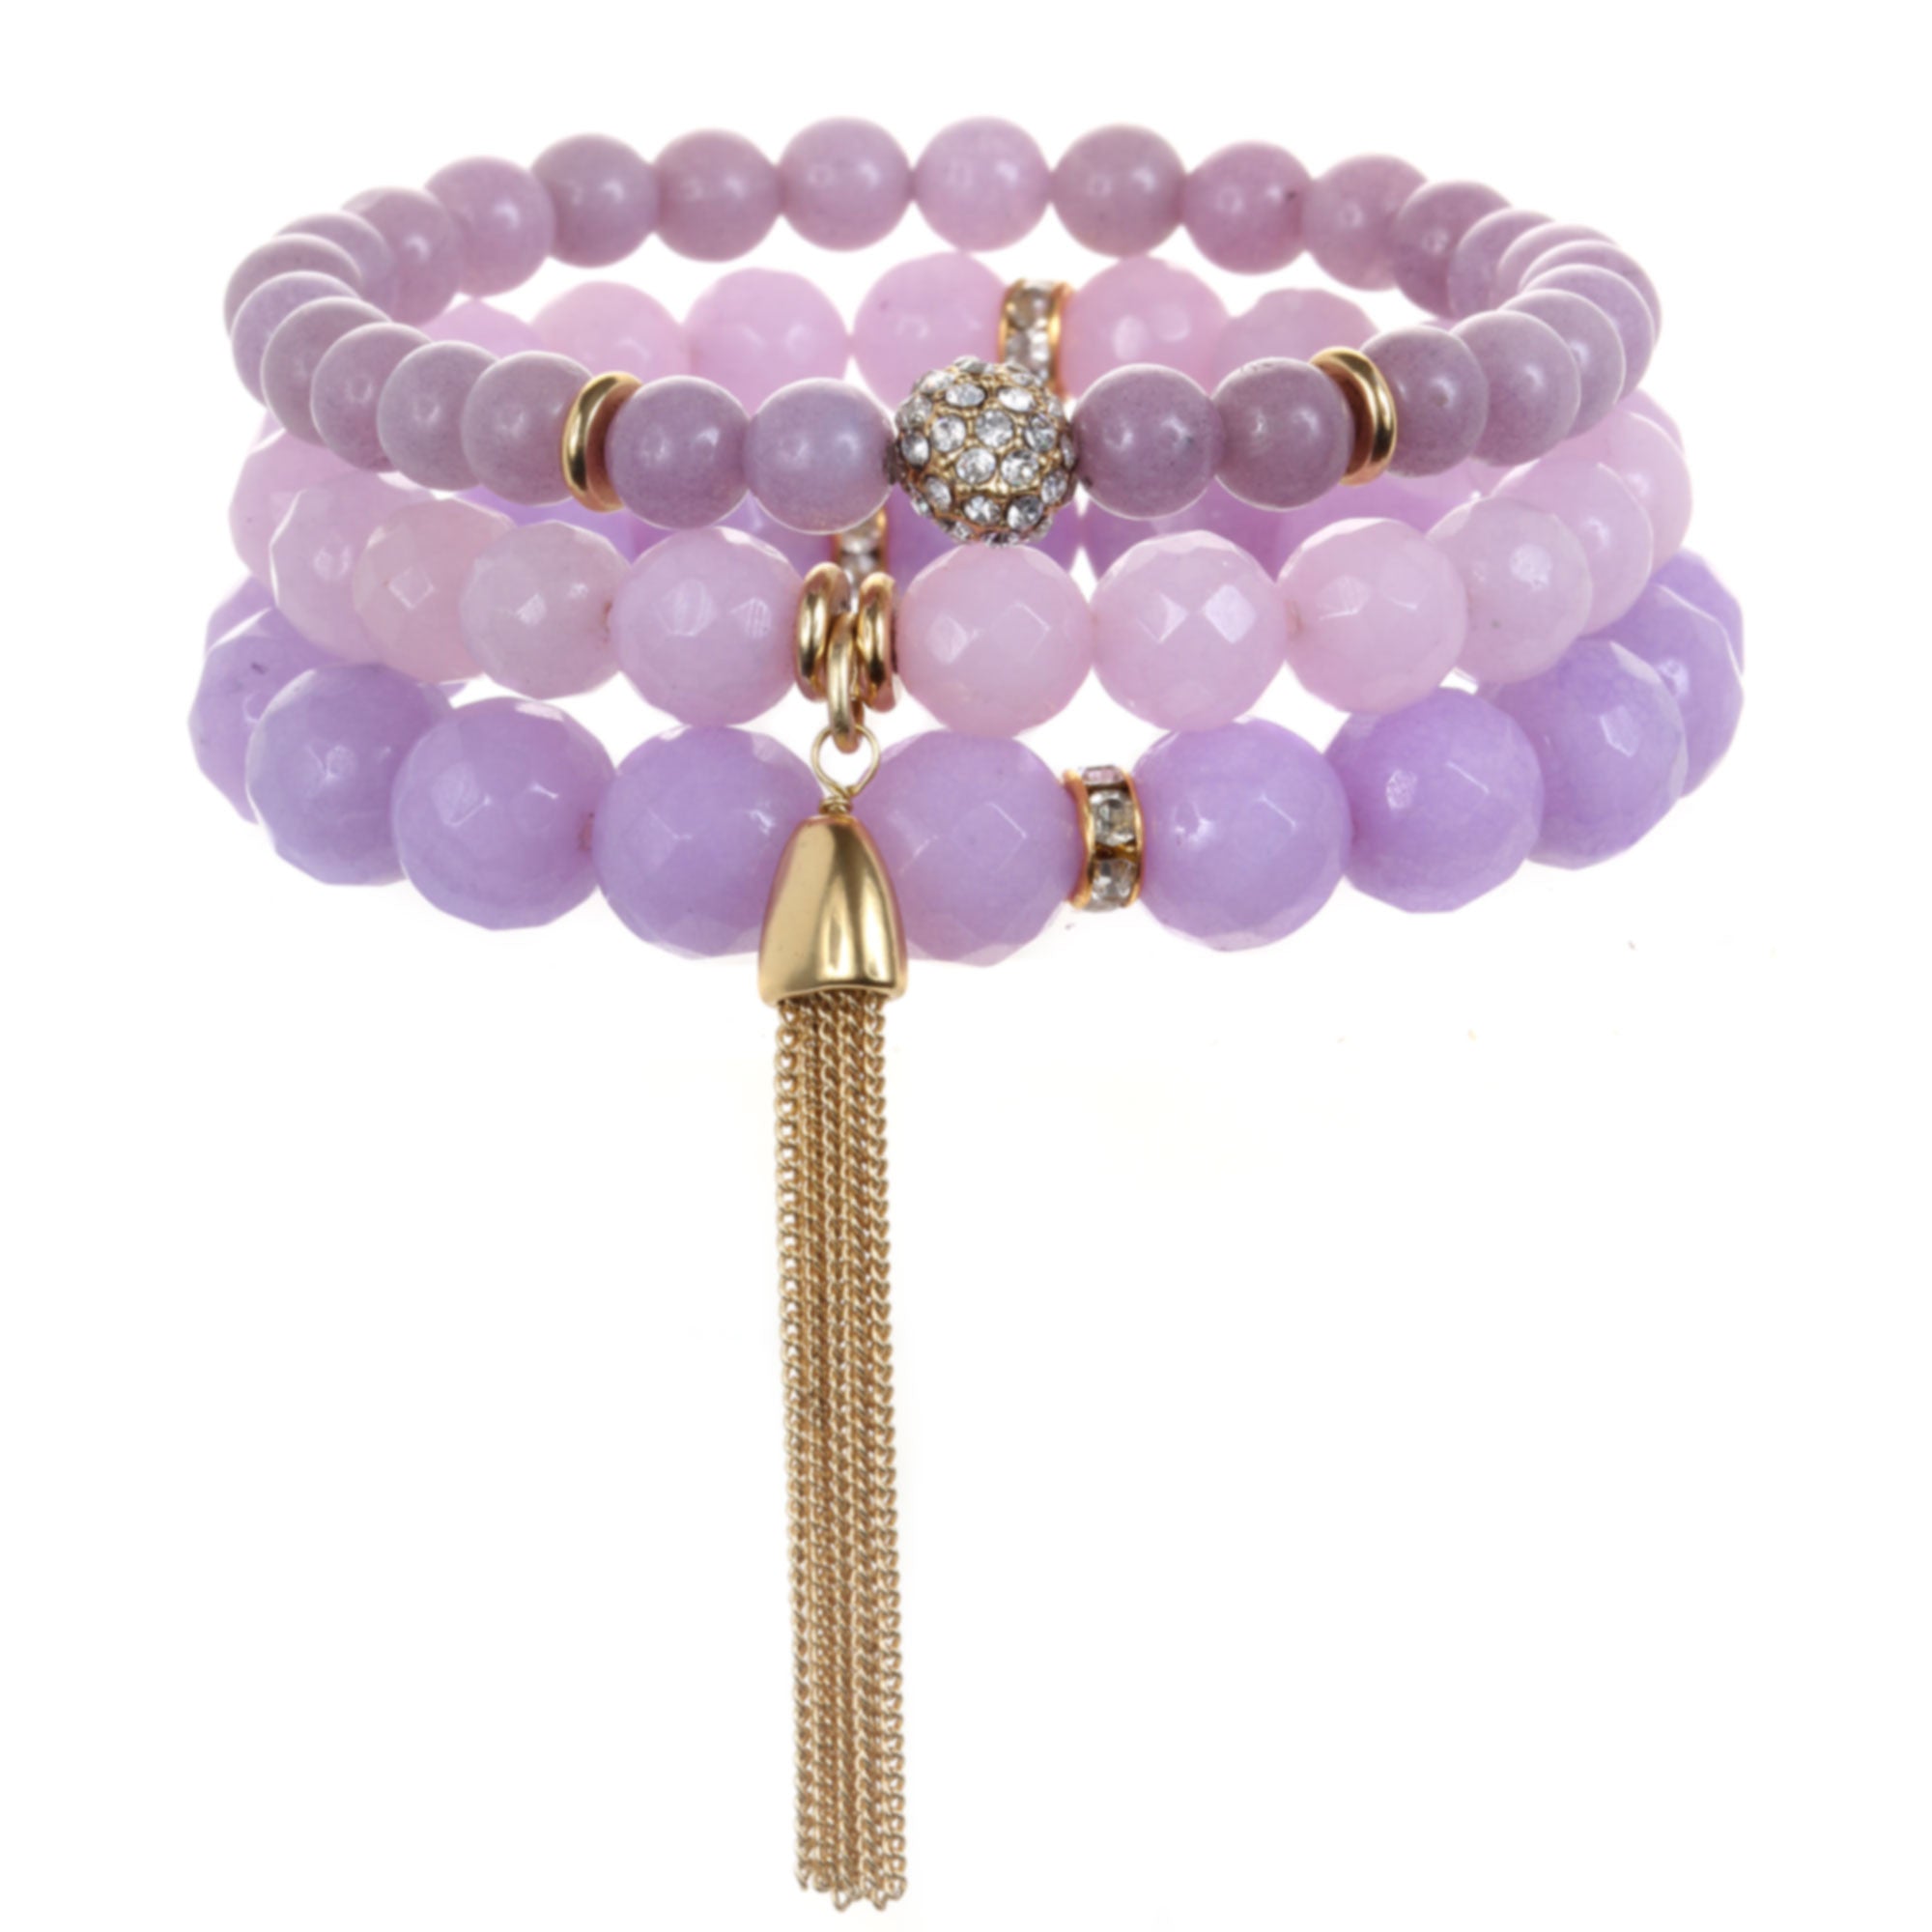 Good Karma Bracelet Company - Gemstone Bracelets, Gemstone Jewelry